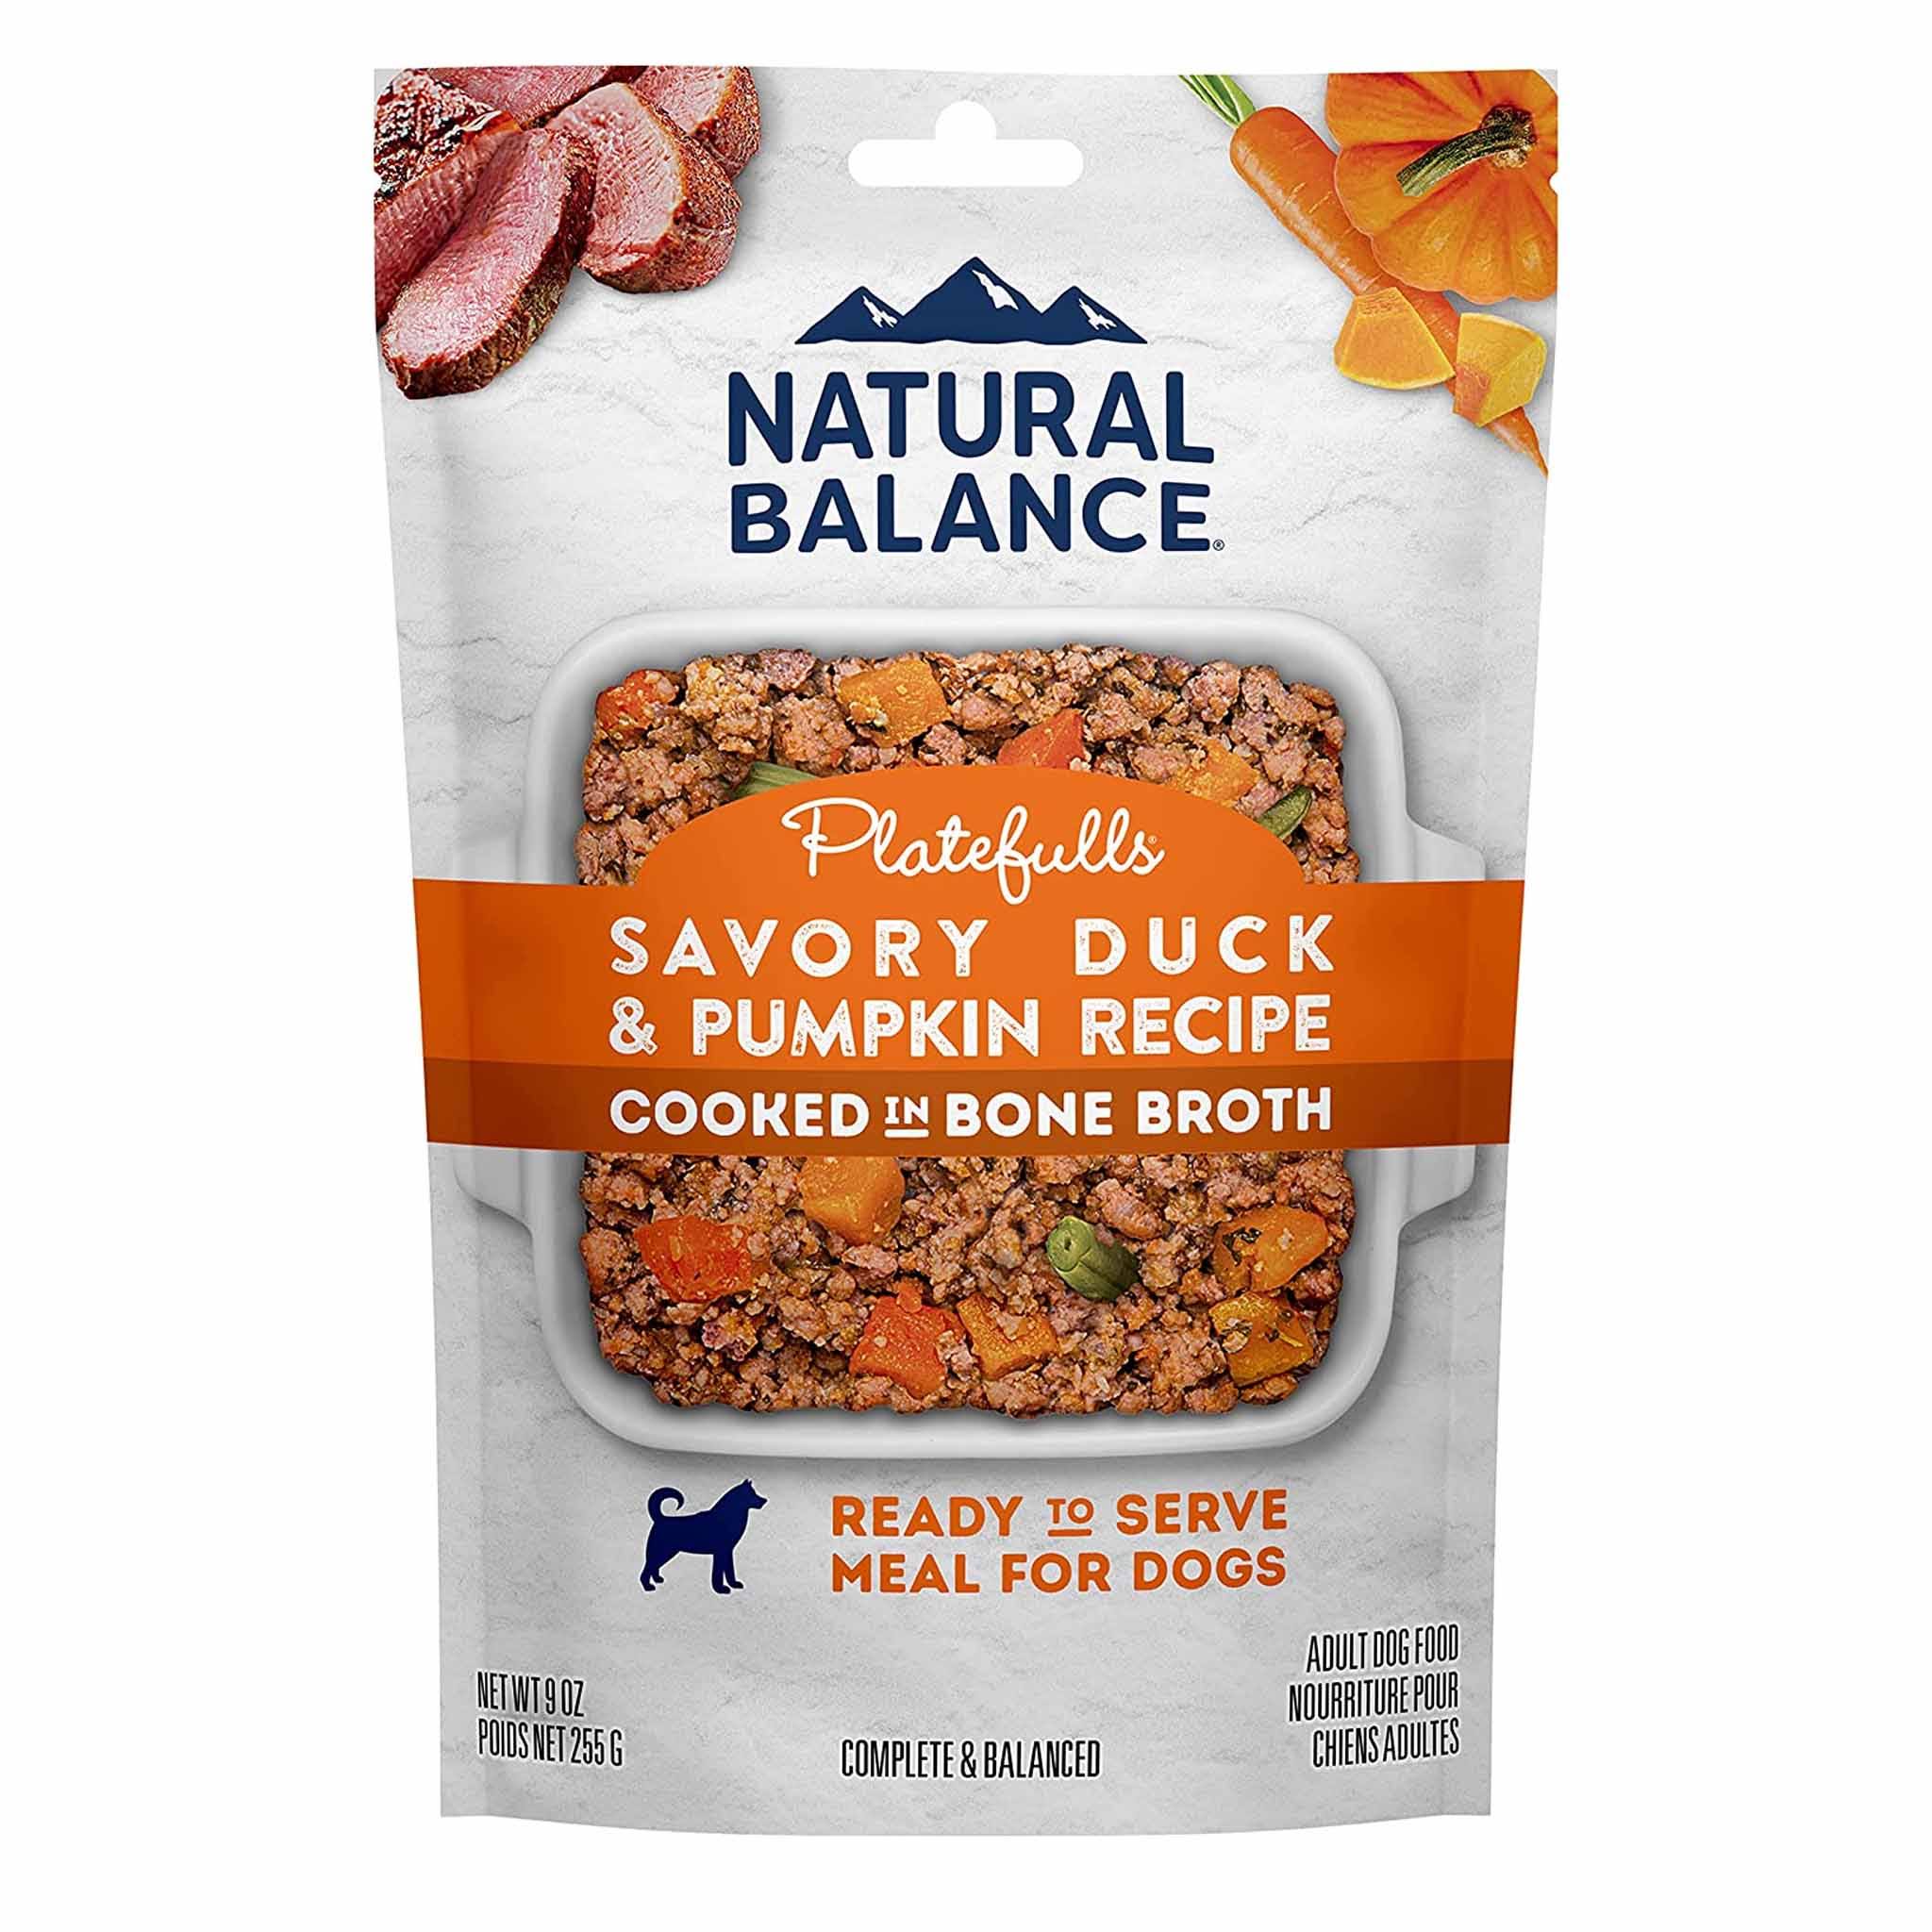 Natural Balance Platefulls Savory Duck & Pumpkin Recipe Wet Dog Food, 9 Ounces